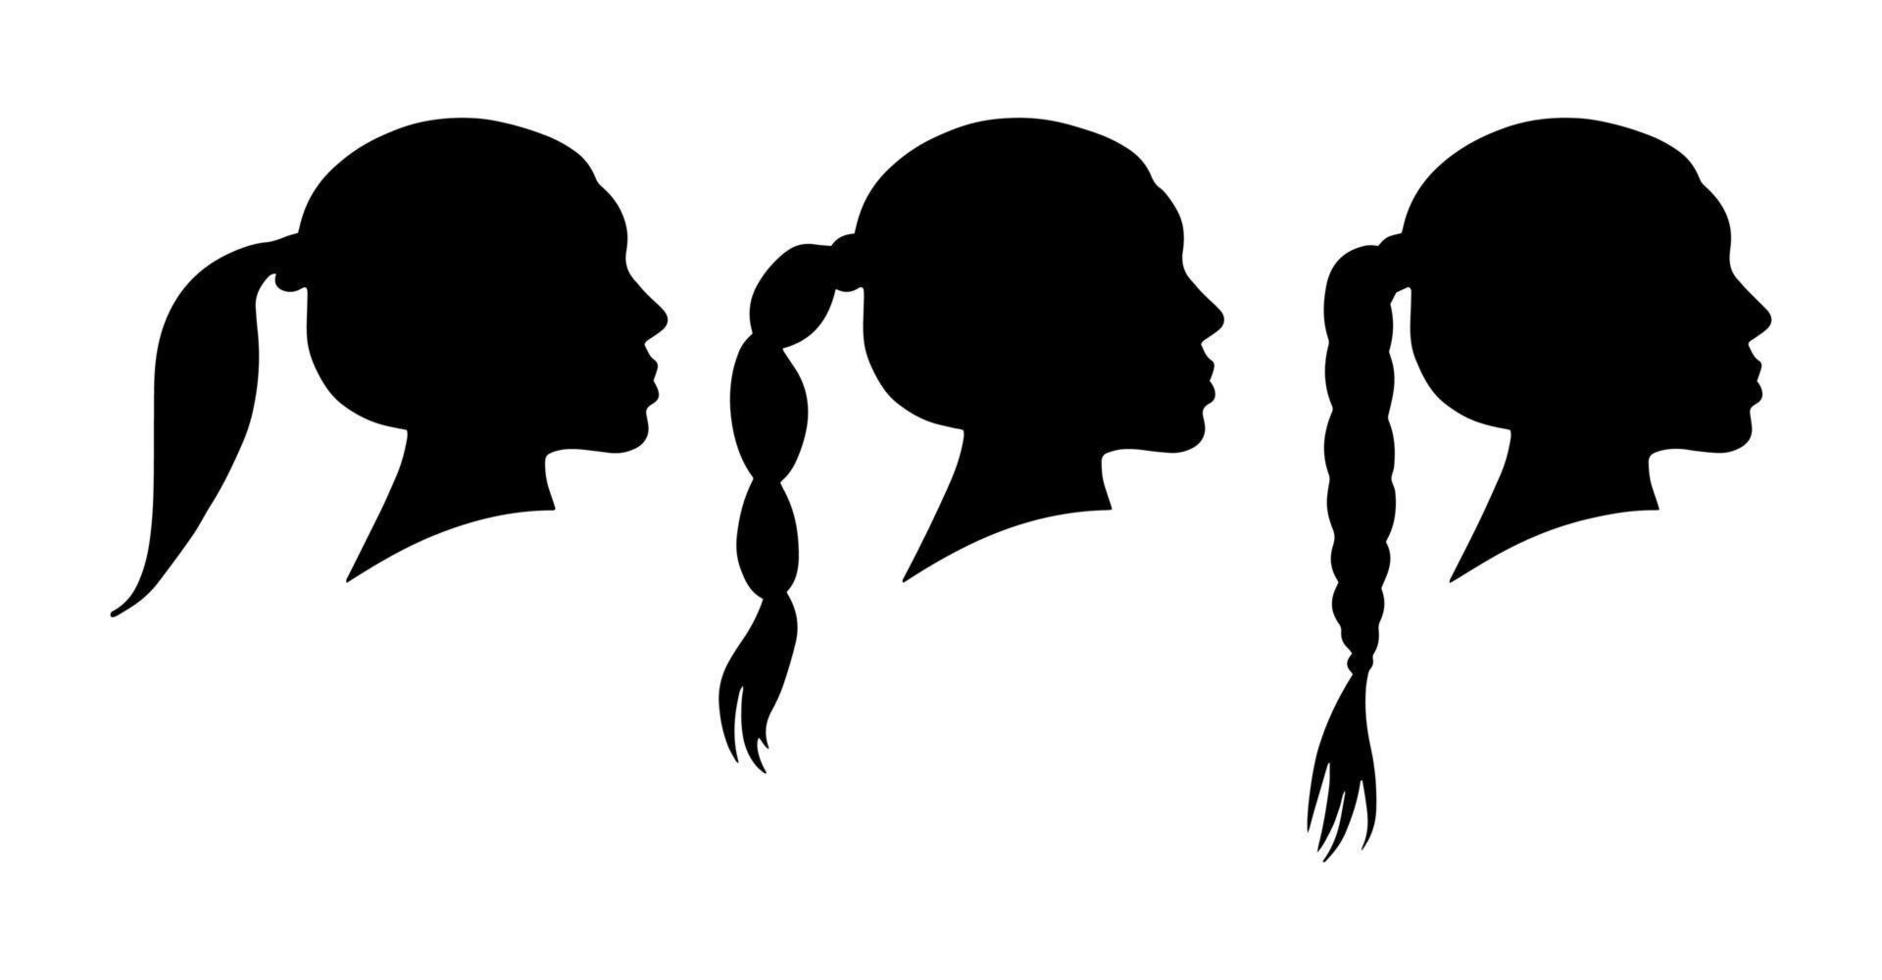 cabeza de mujer aislada forma de sombra negra. silueta de vector plano simple. Variaciones de peinados. pelo trenzado, ponytale. conjunto de iconos de moda de belleza femenina.